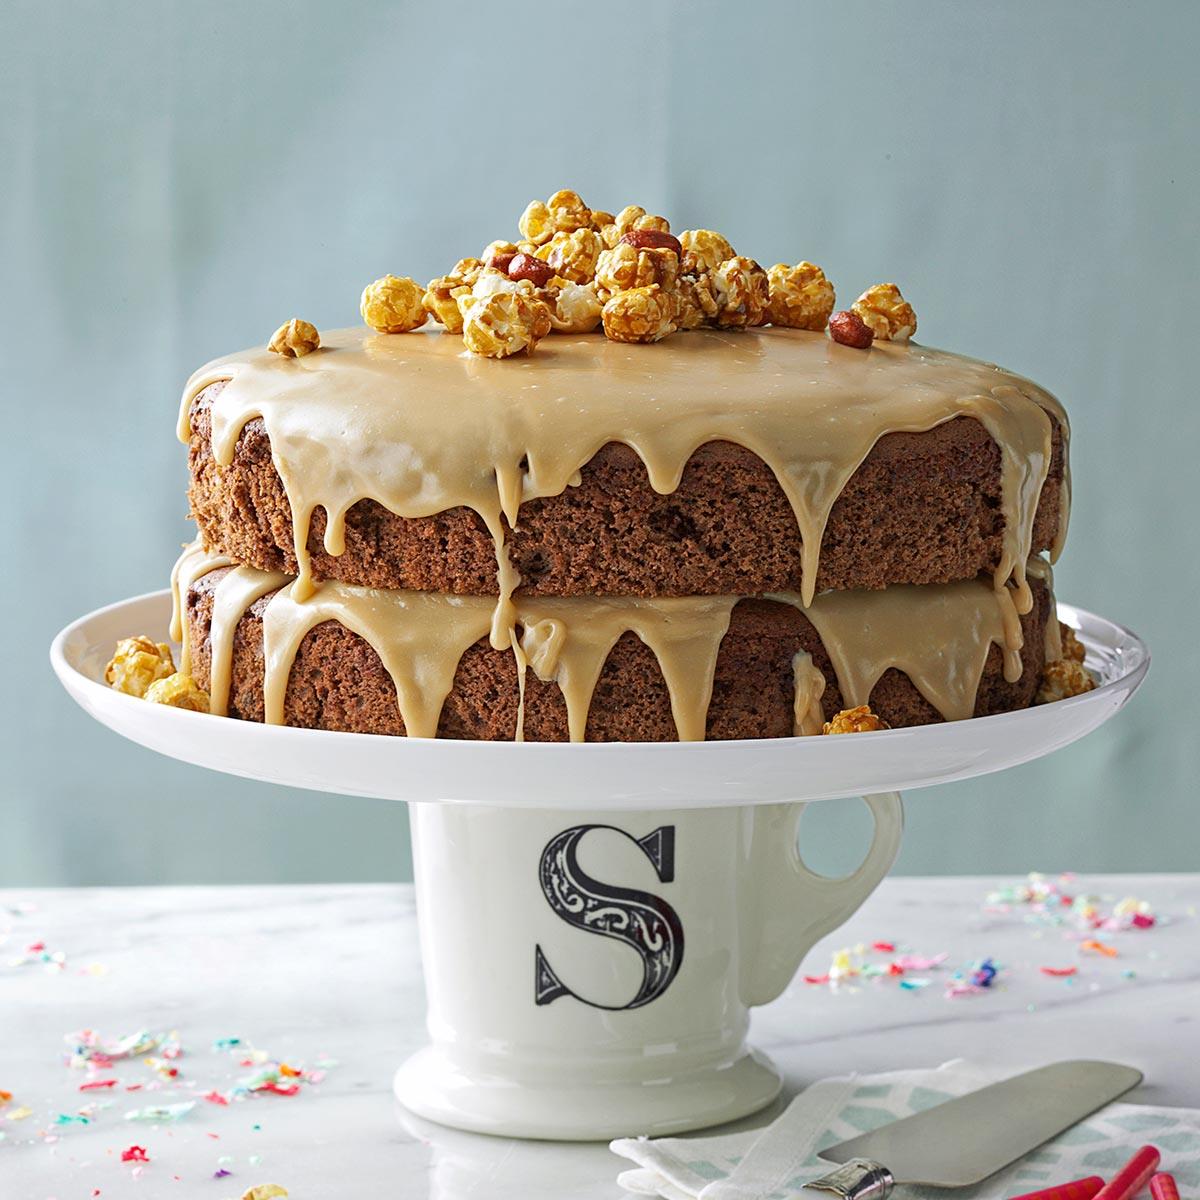 Sugar-and-Spice Layer Cake Recipe